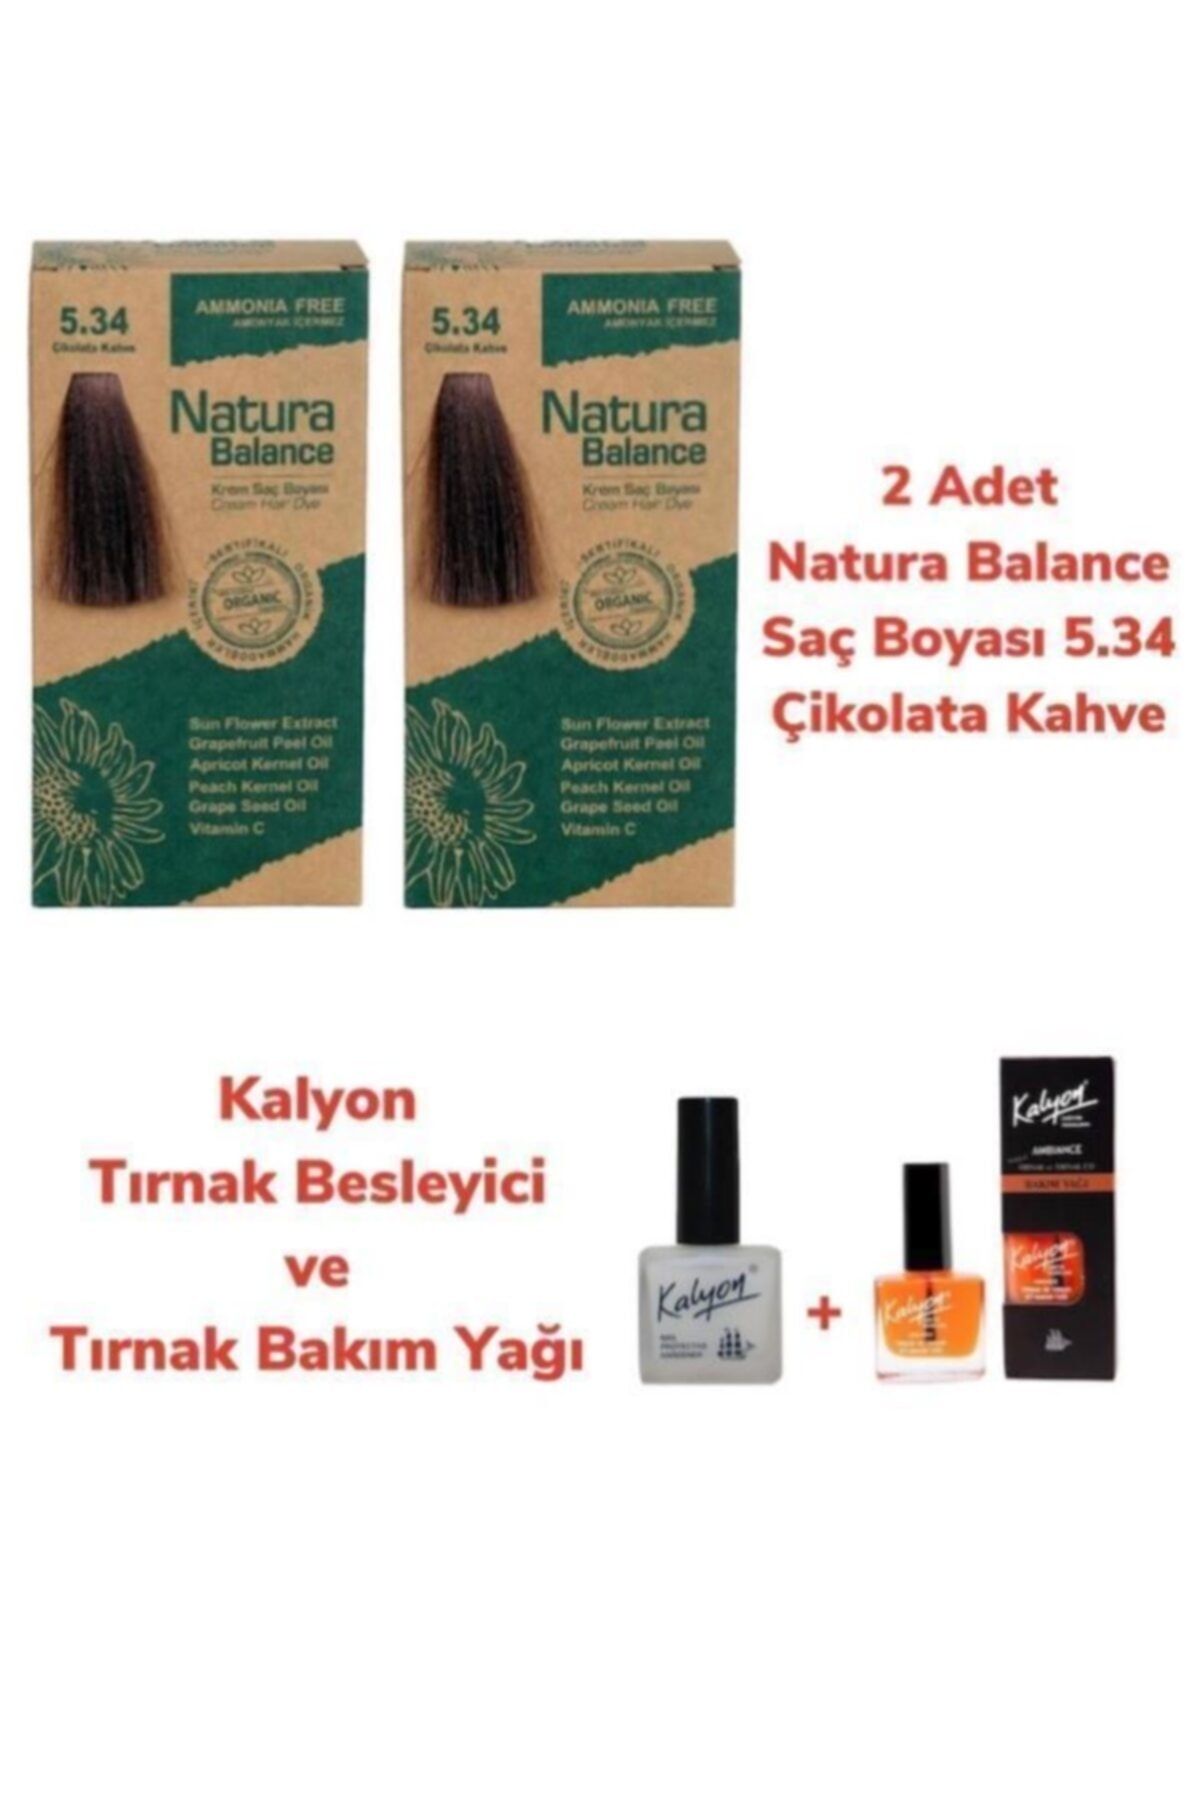 Genel Markalar Balance Saç Boyası 5.34 Çikolata Kahve 2 Adet + Kalyon Tırnak Besleyici Ve Bakım Yağı